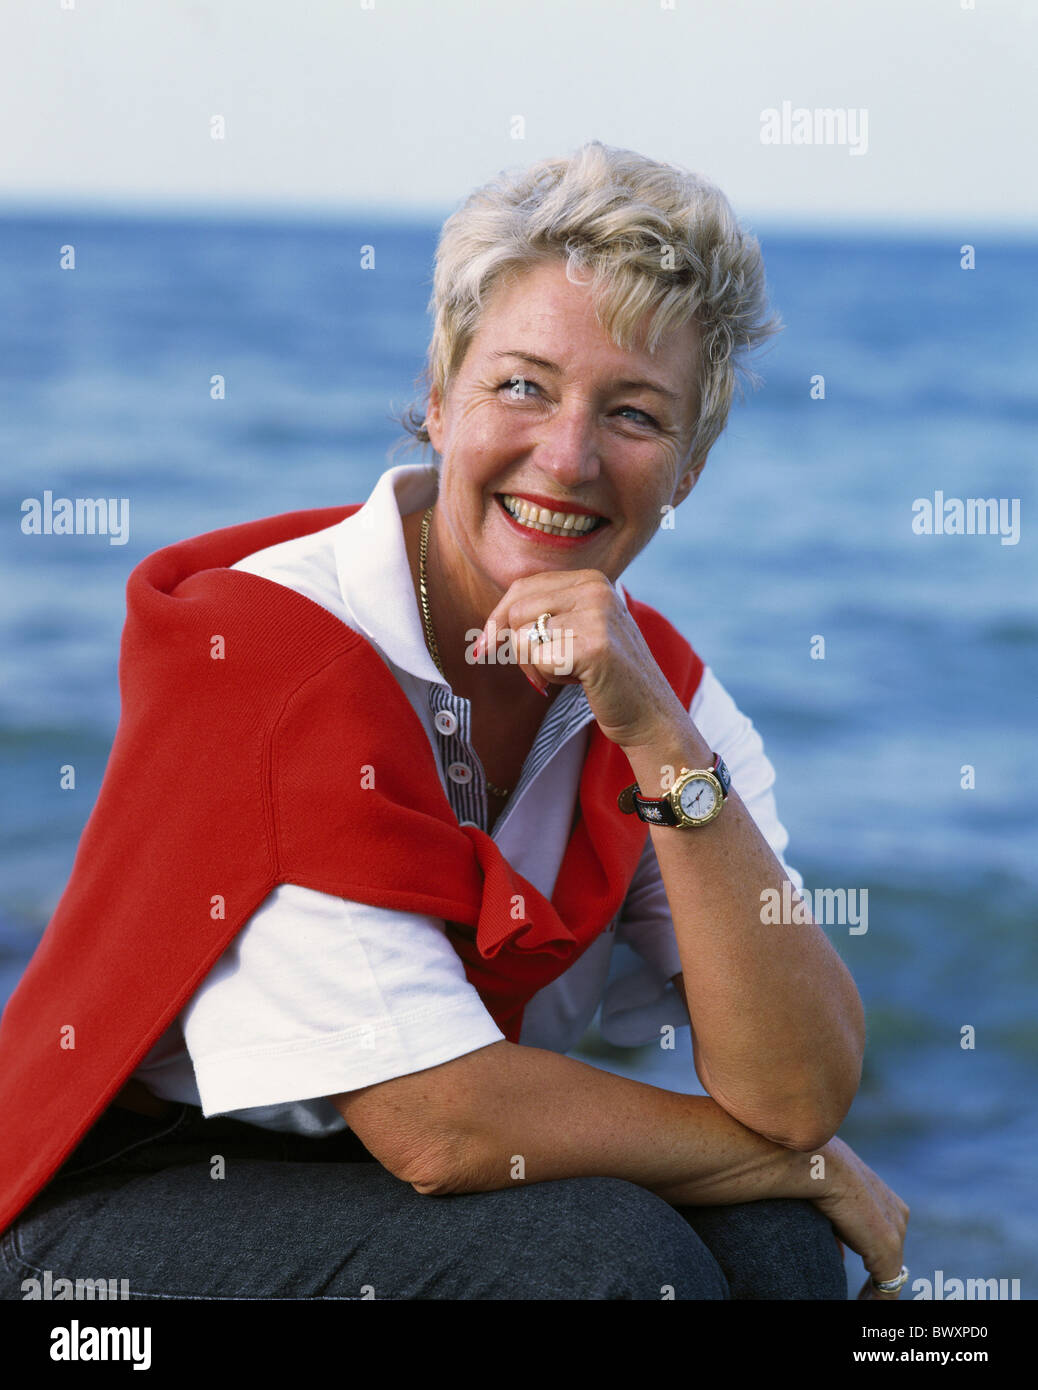 Al di fuori di donna sorriso medioevo vecchia persona senior citizen estate mare ritratto contently Foto Stock